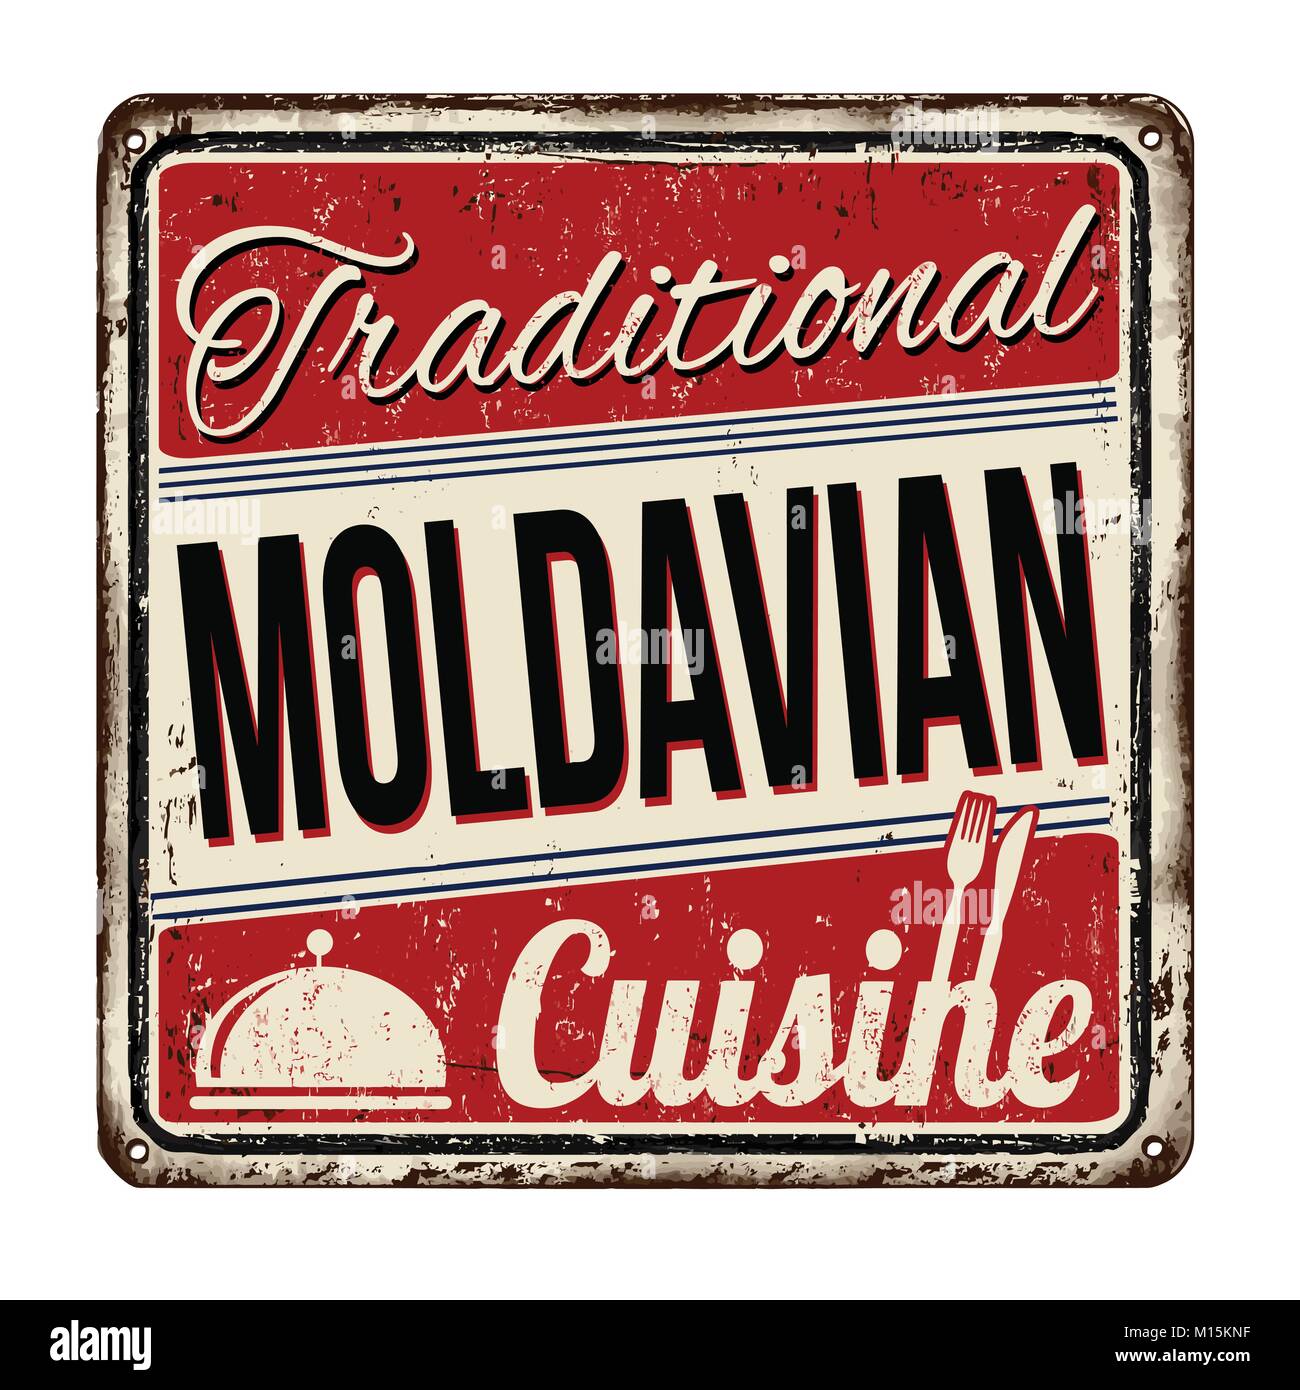 Traditionelle moldawische Küche vintage rostiges Metall Zeichen auf weißem Hintergrund, Vector Illustration Stock Vektor